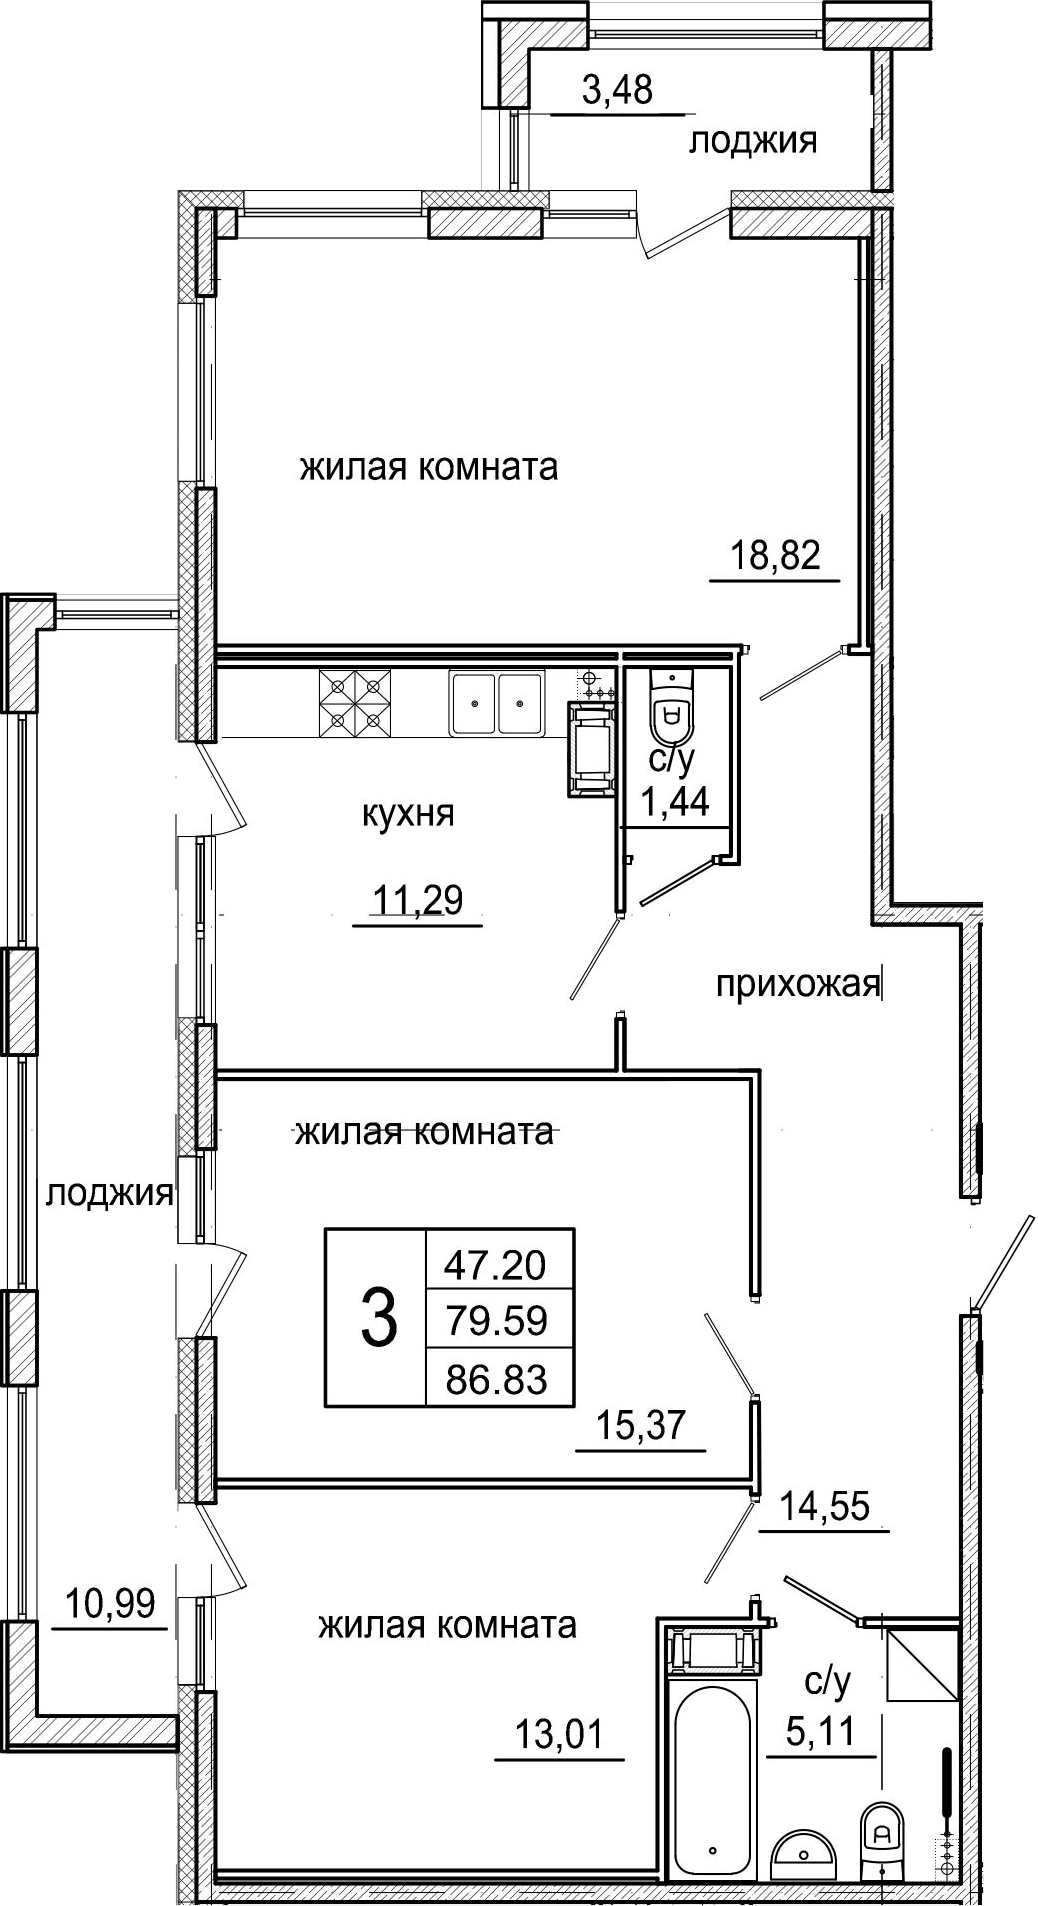 3-комнатная, 86.83 м²– 2